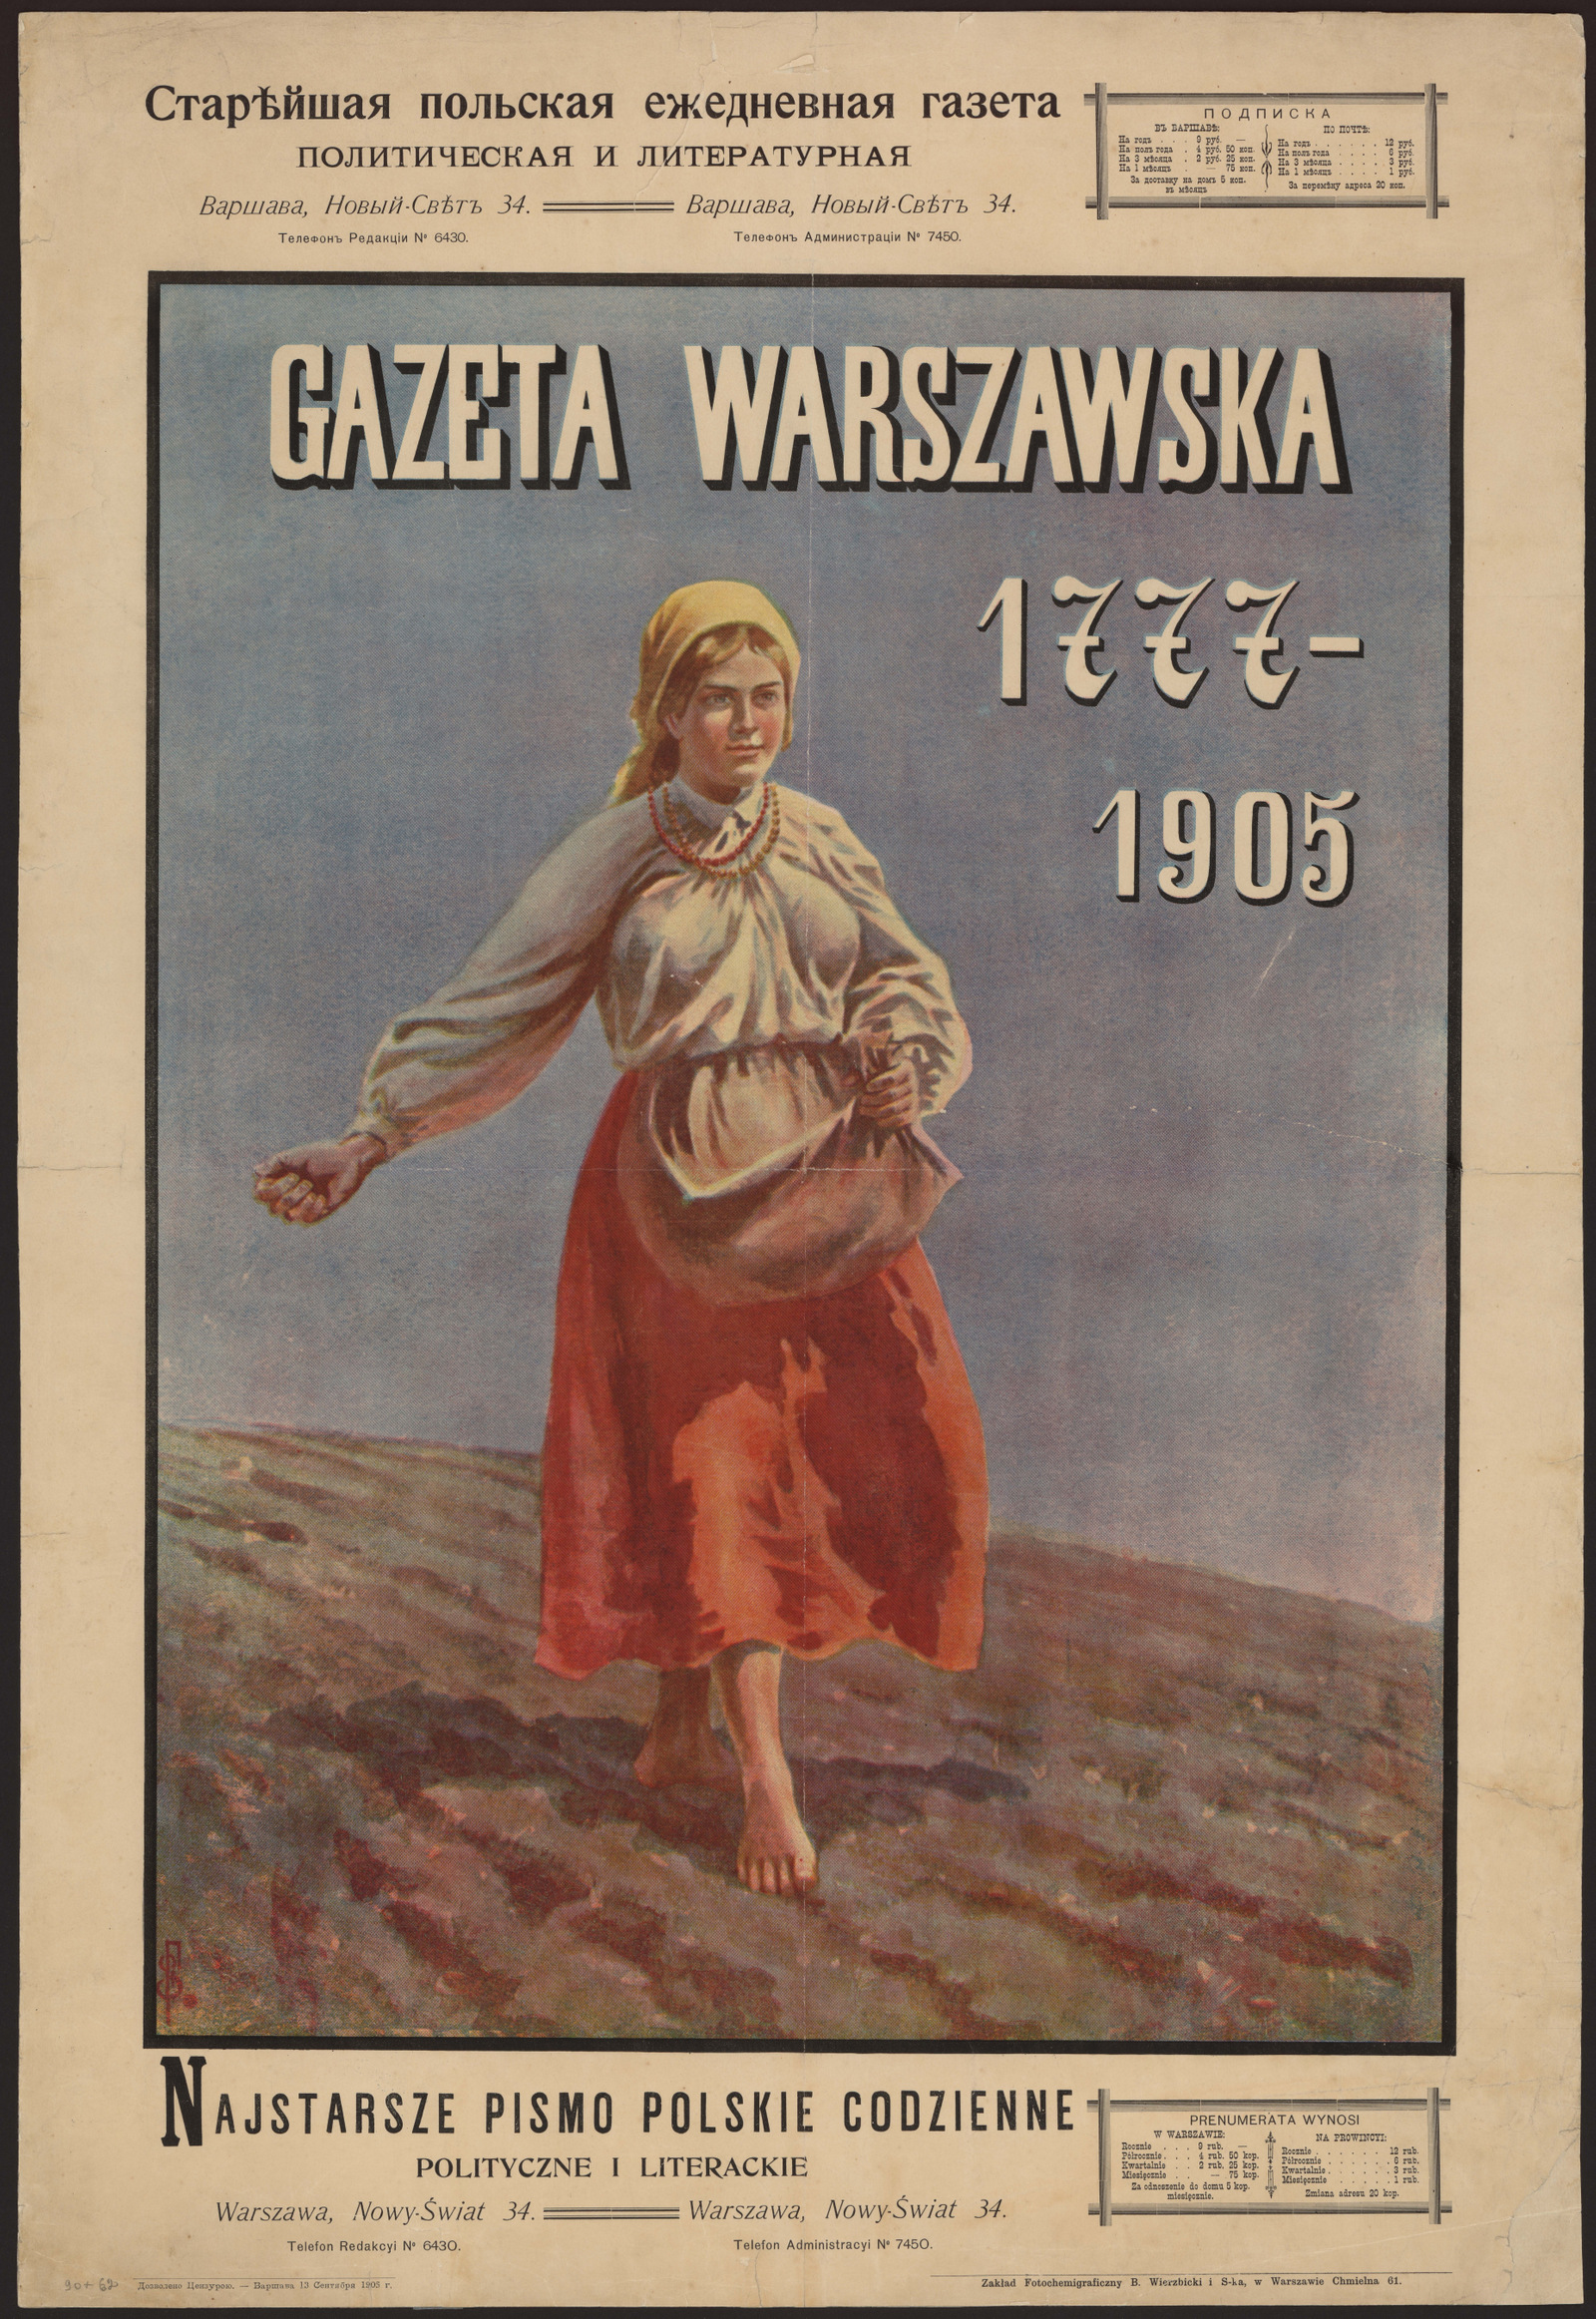 Изображение книги Старейшая польская ежедневная газета, политическая и литературная "Gazeta Warszawska" 1777-1905